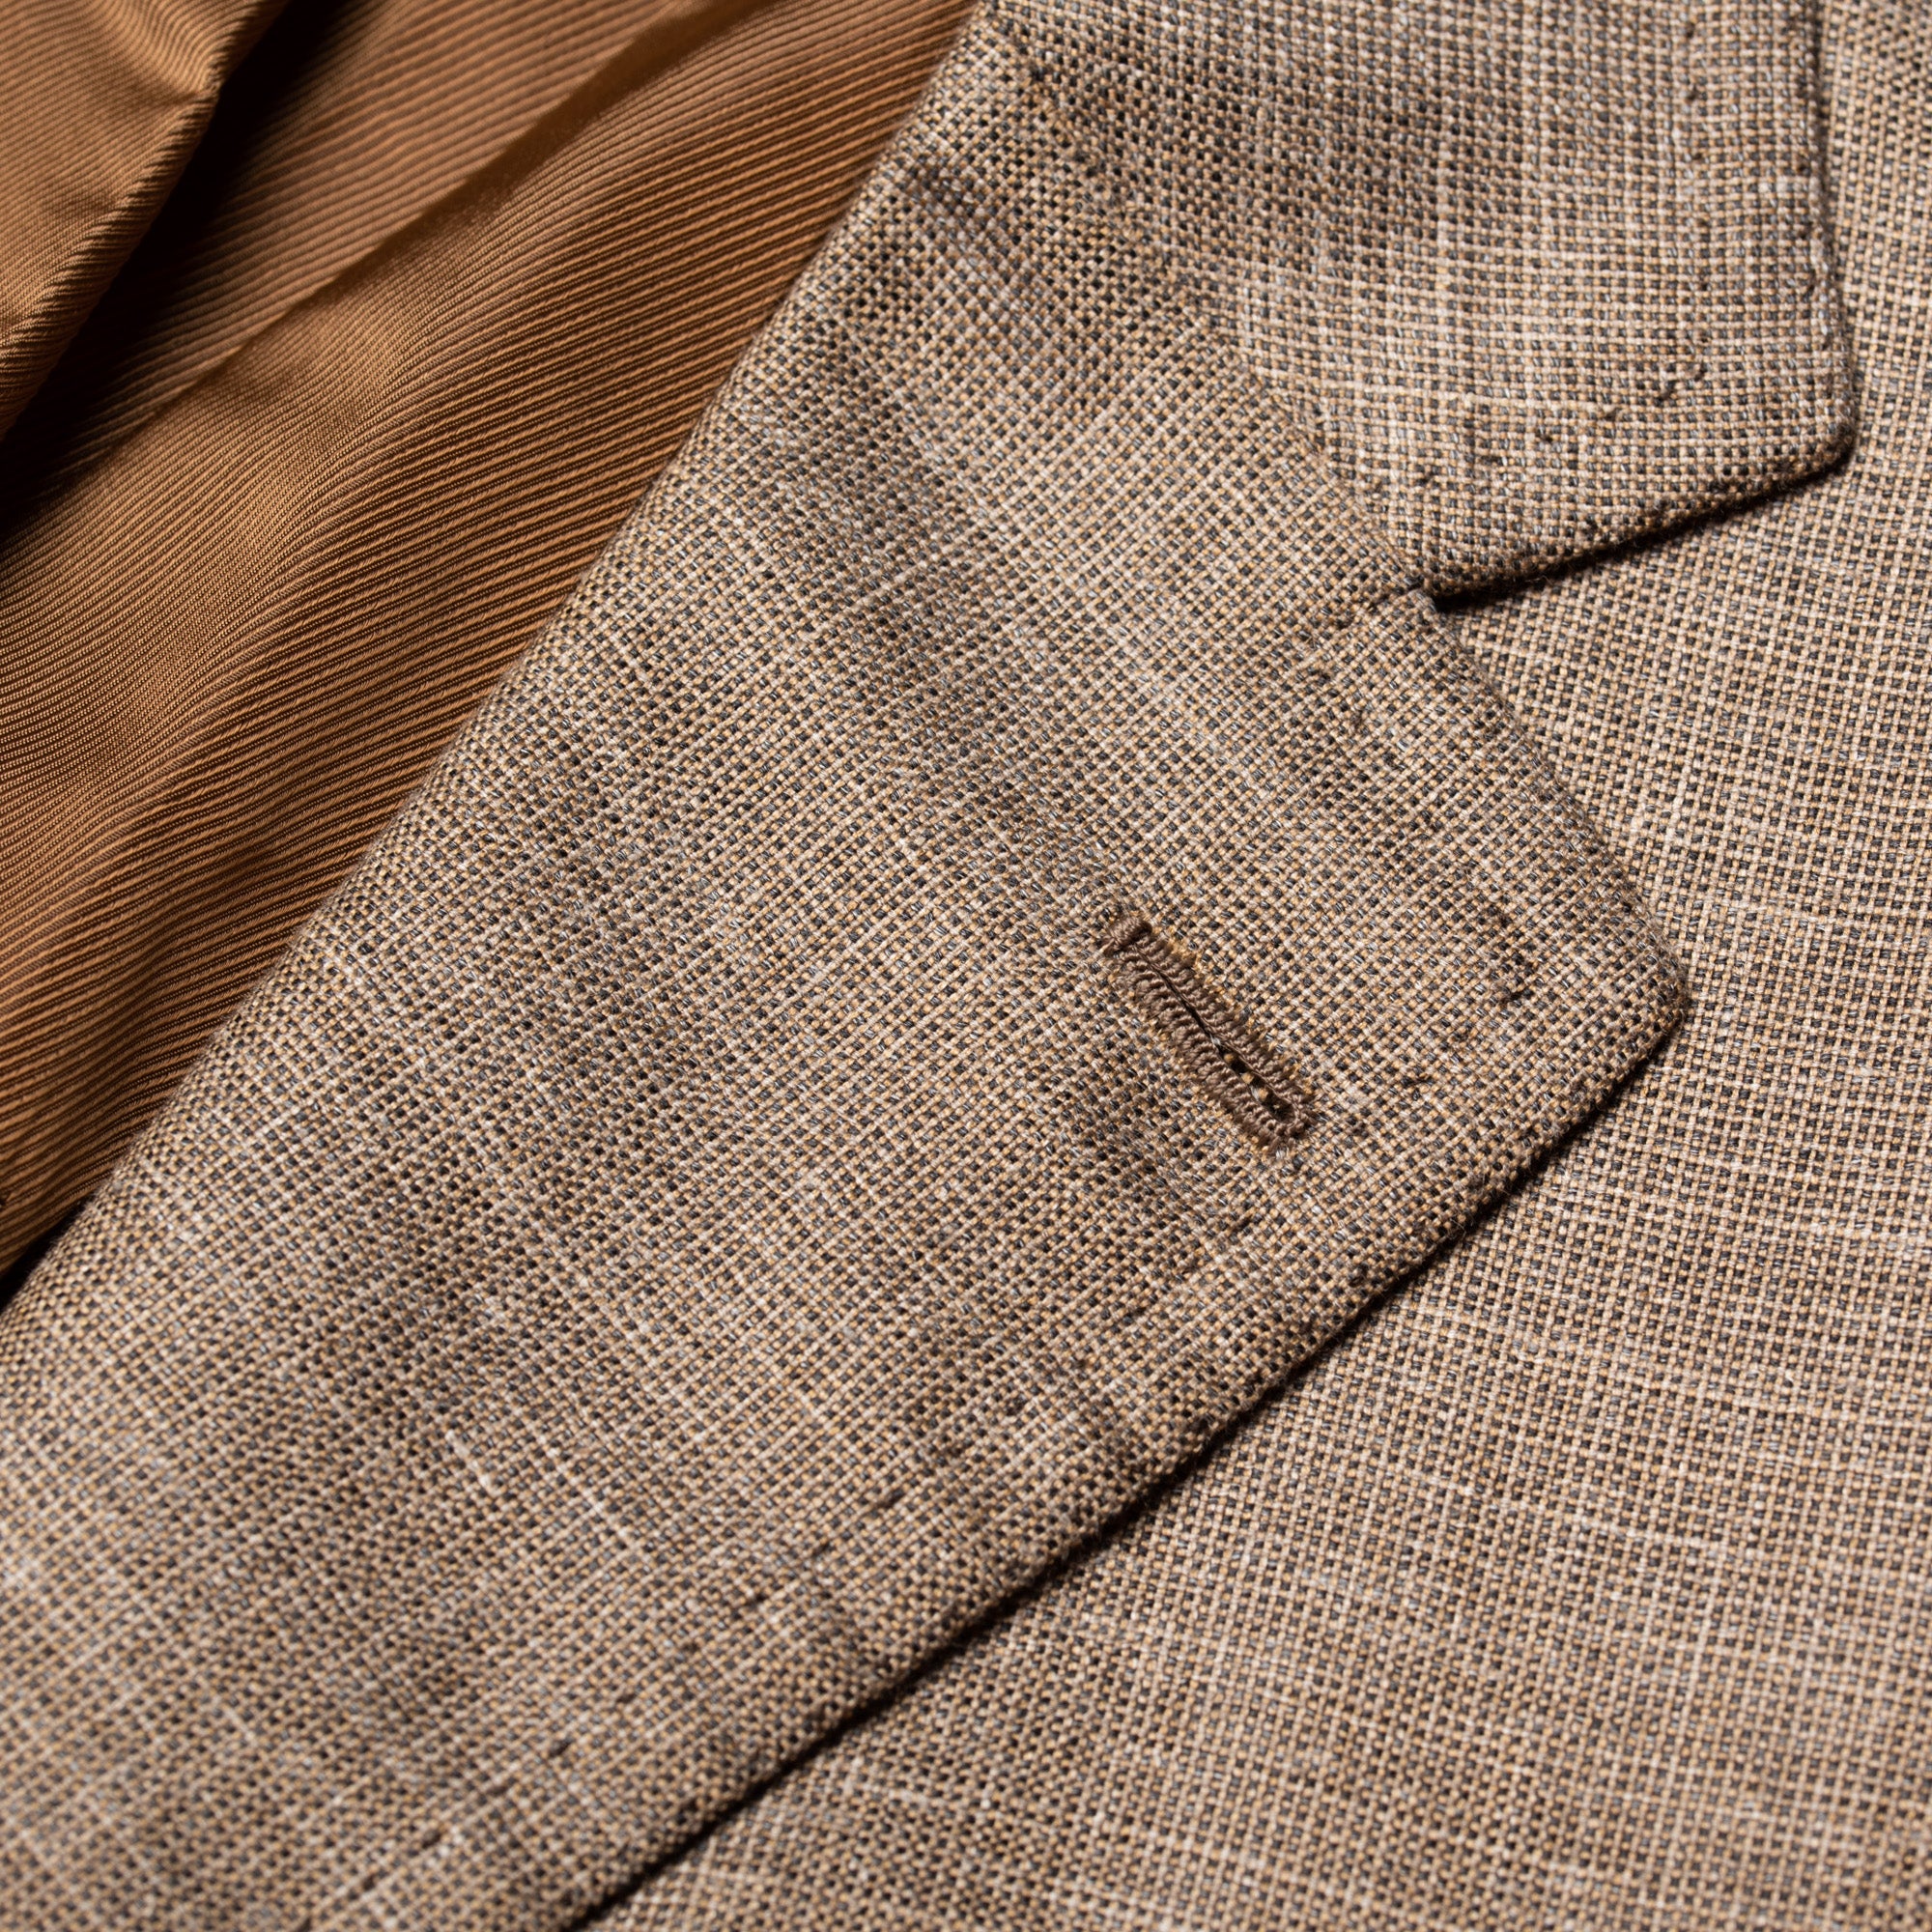 CESARE ATTOLINI for M.BARDELLI Khaki Cashmere-Silk-Cotton Jacket EU 50 NEW US 40 CESARE ATTOLINI